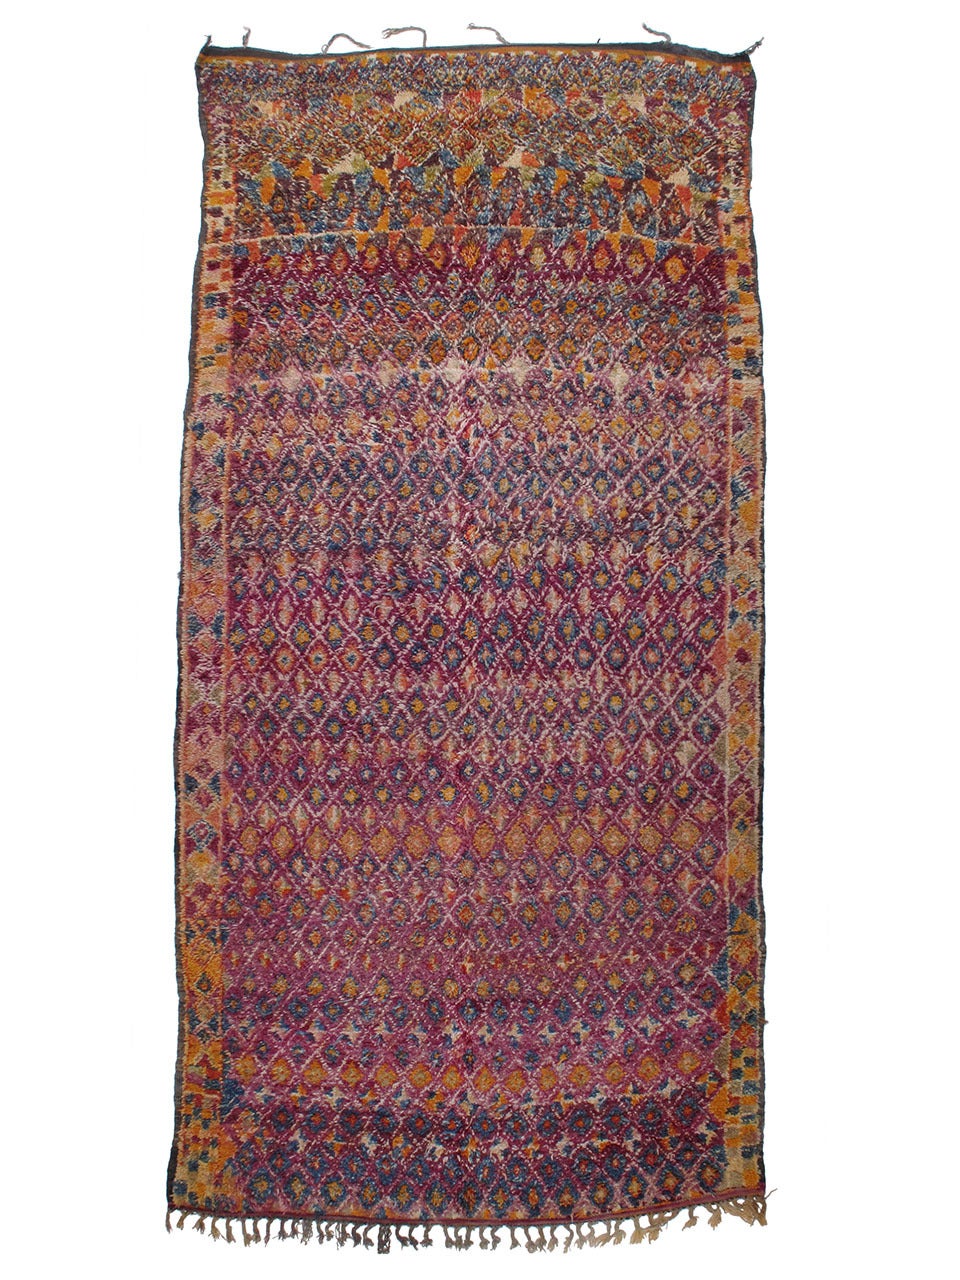 Large Beni Mguild Moroccan Berber Carpet